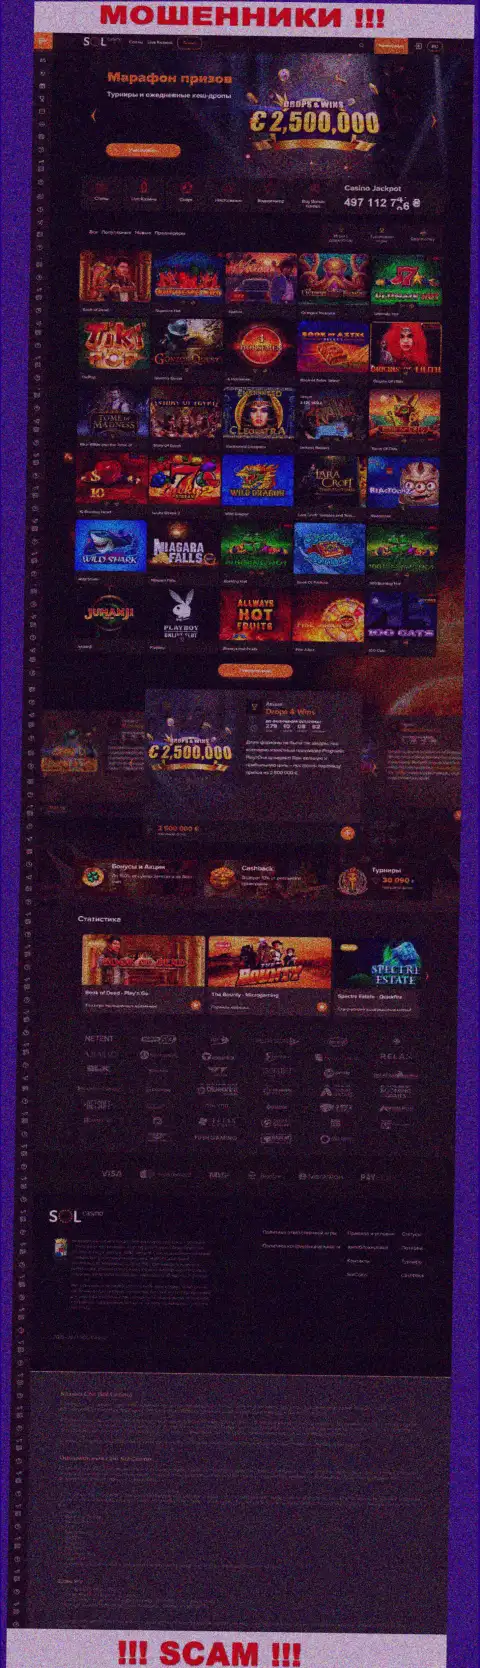 Основная страница официального веб-ресурса мошенников Sol Casino